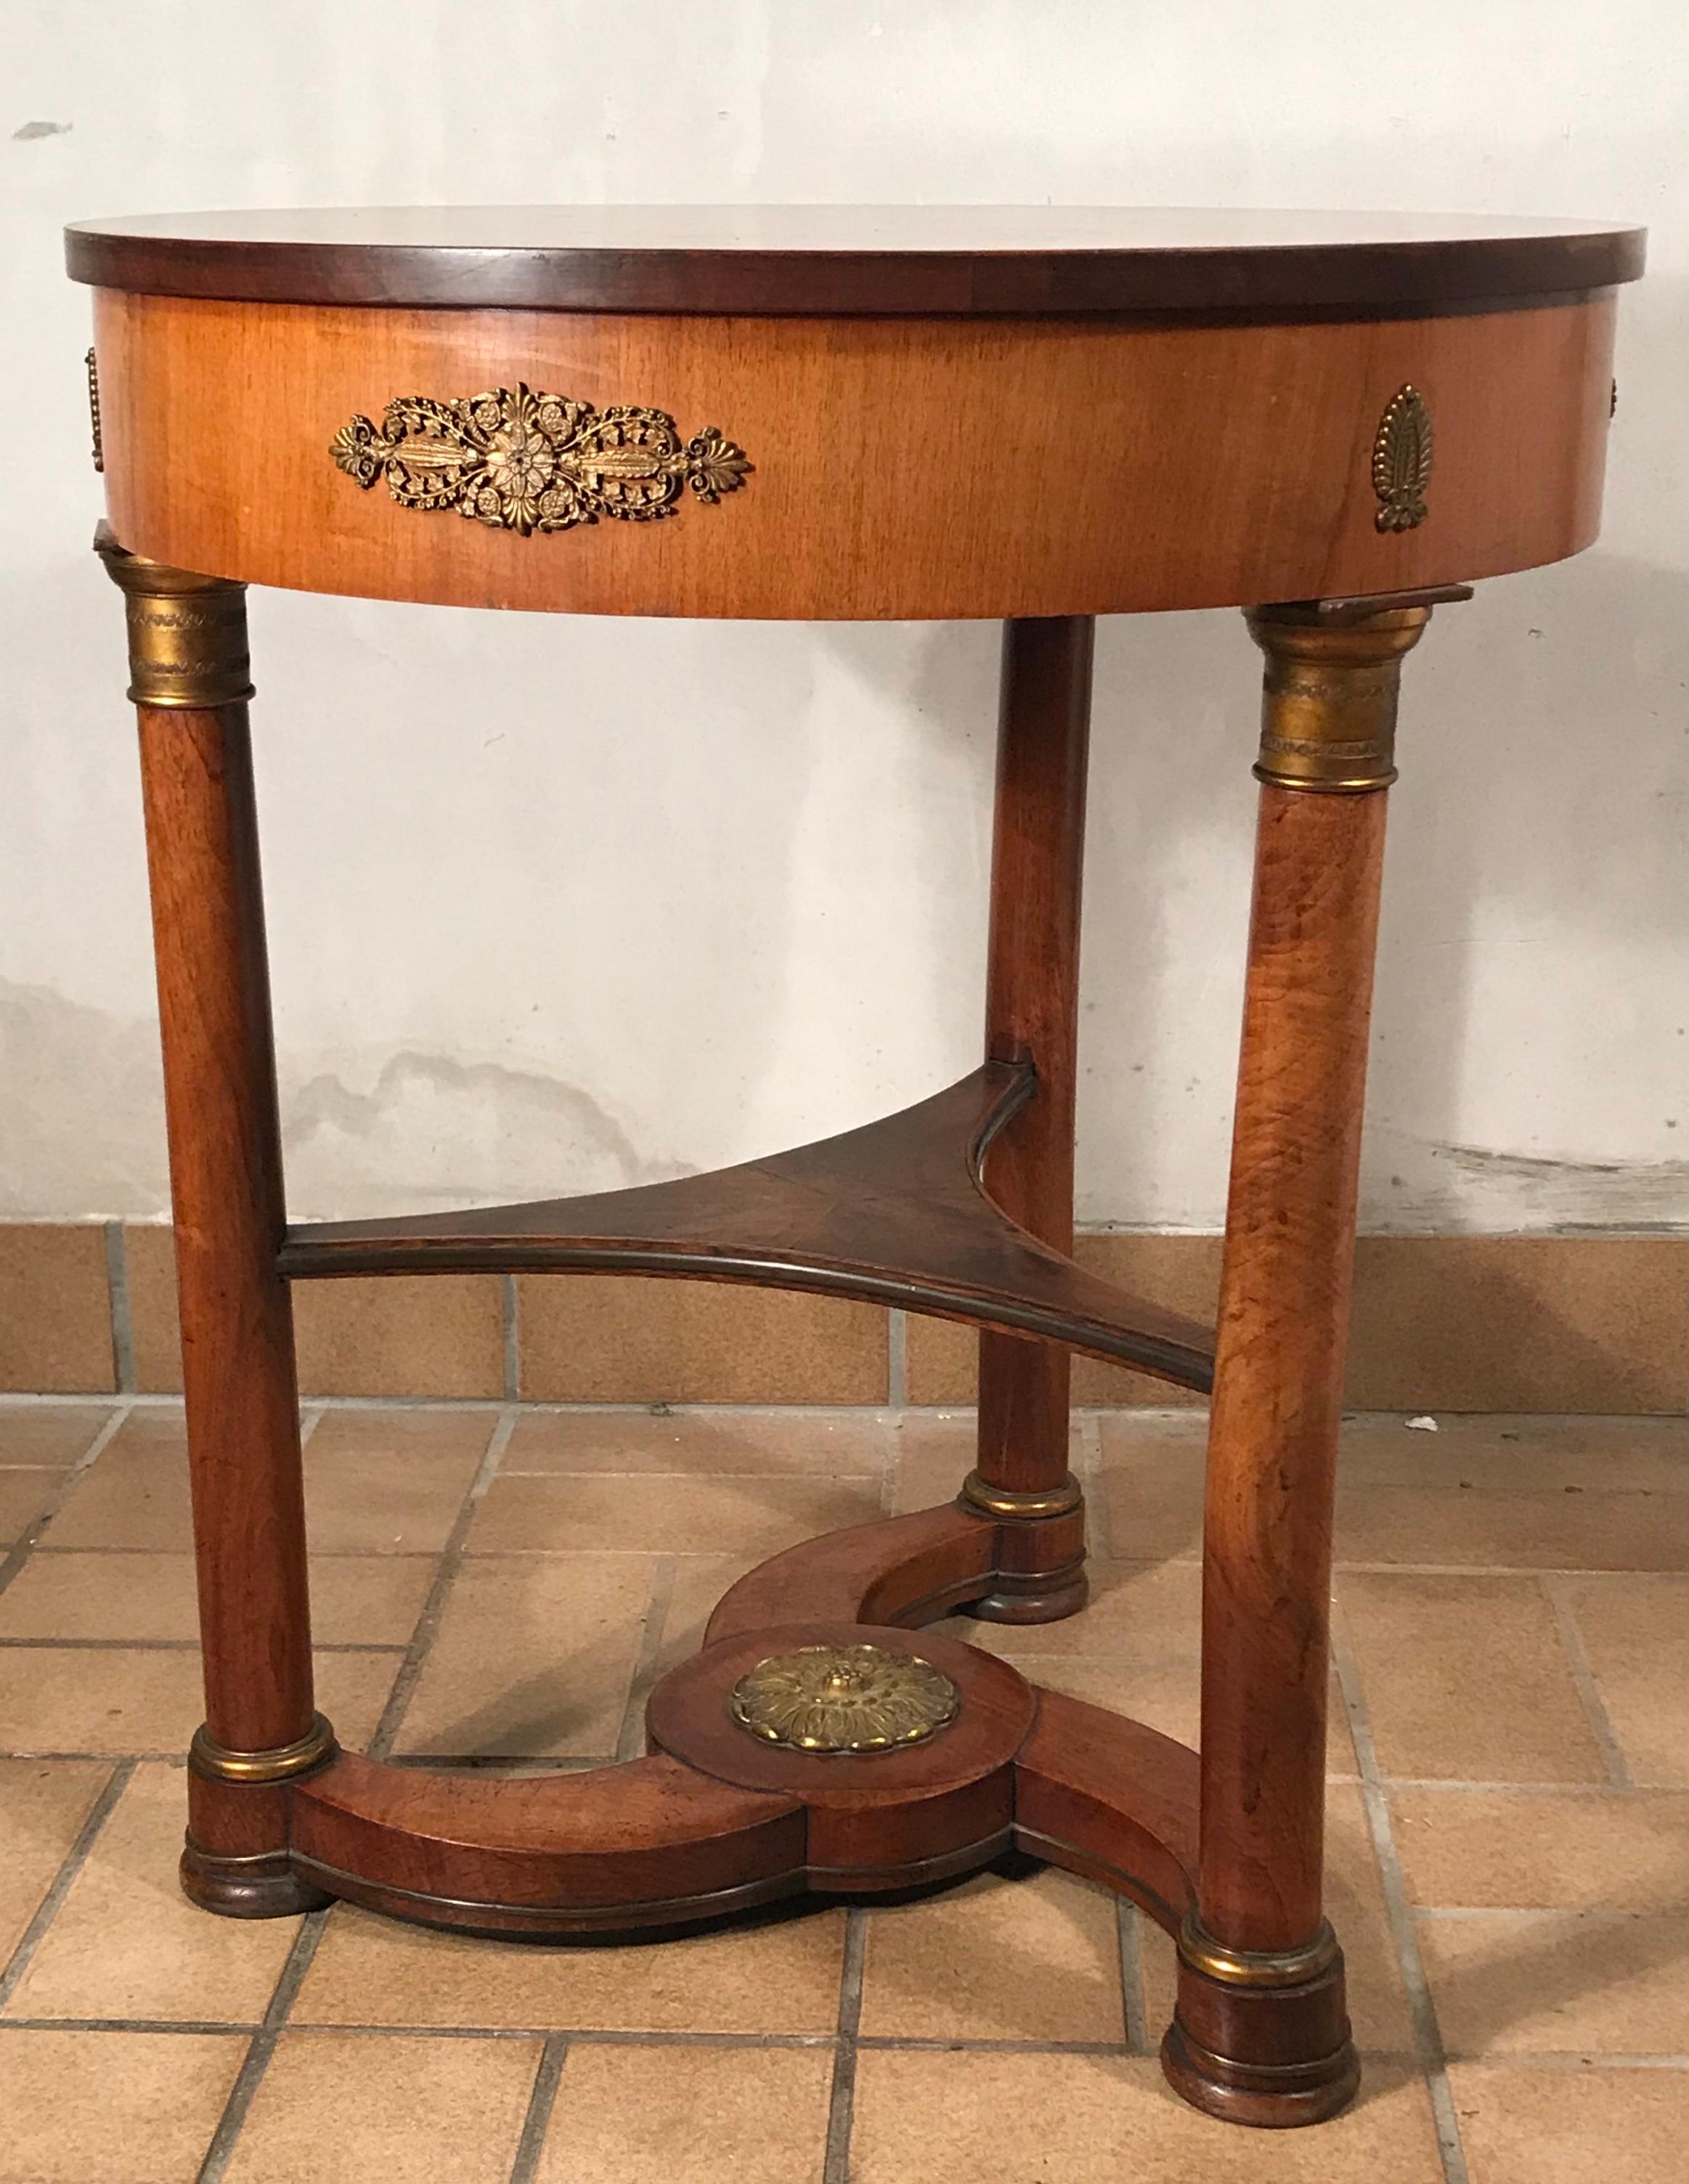 Empire Beistelltisch, Frankreich 1810, Mahagoni furniert.
Schöner Beistelltisch mit einem exquisit gestalteten Sockel. Der Tisch ist in gutem Originalzustand.